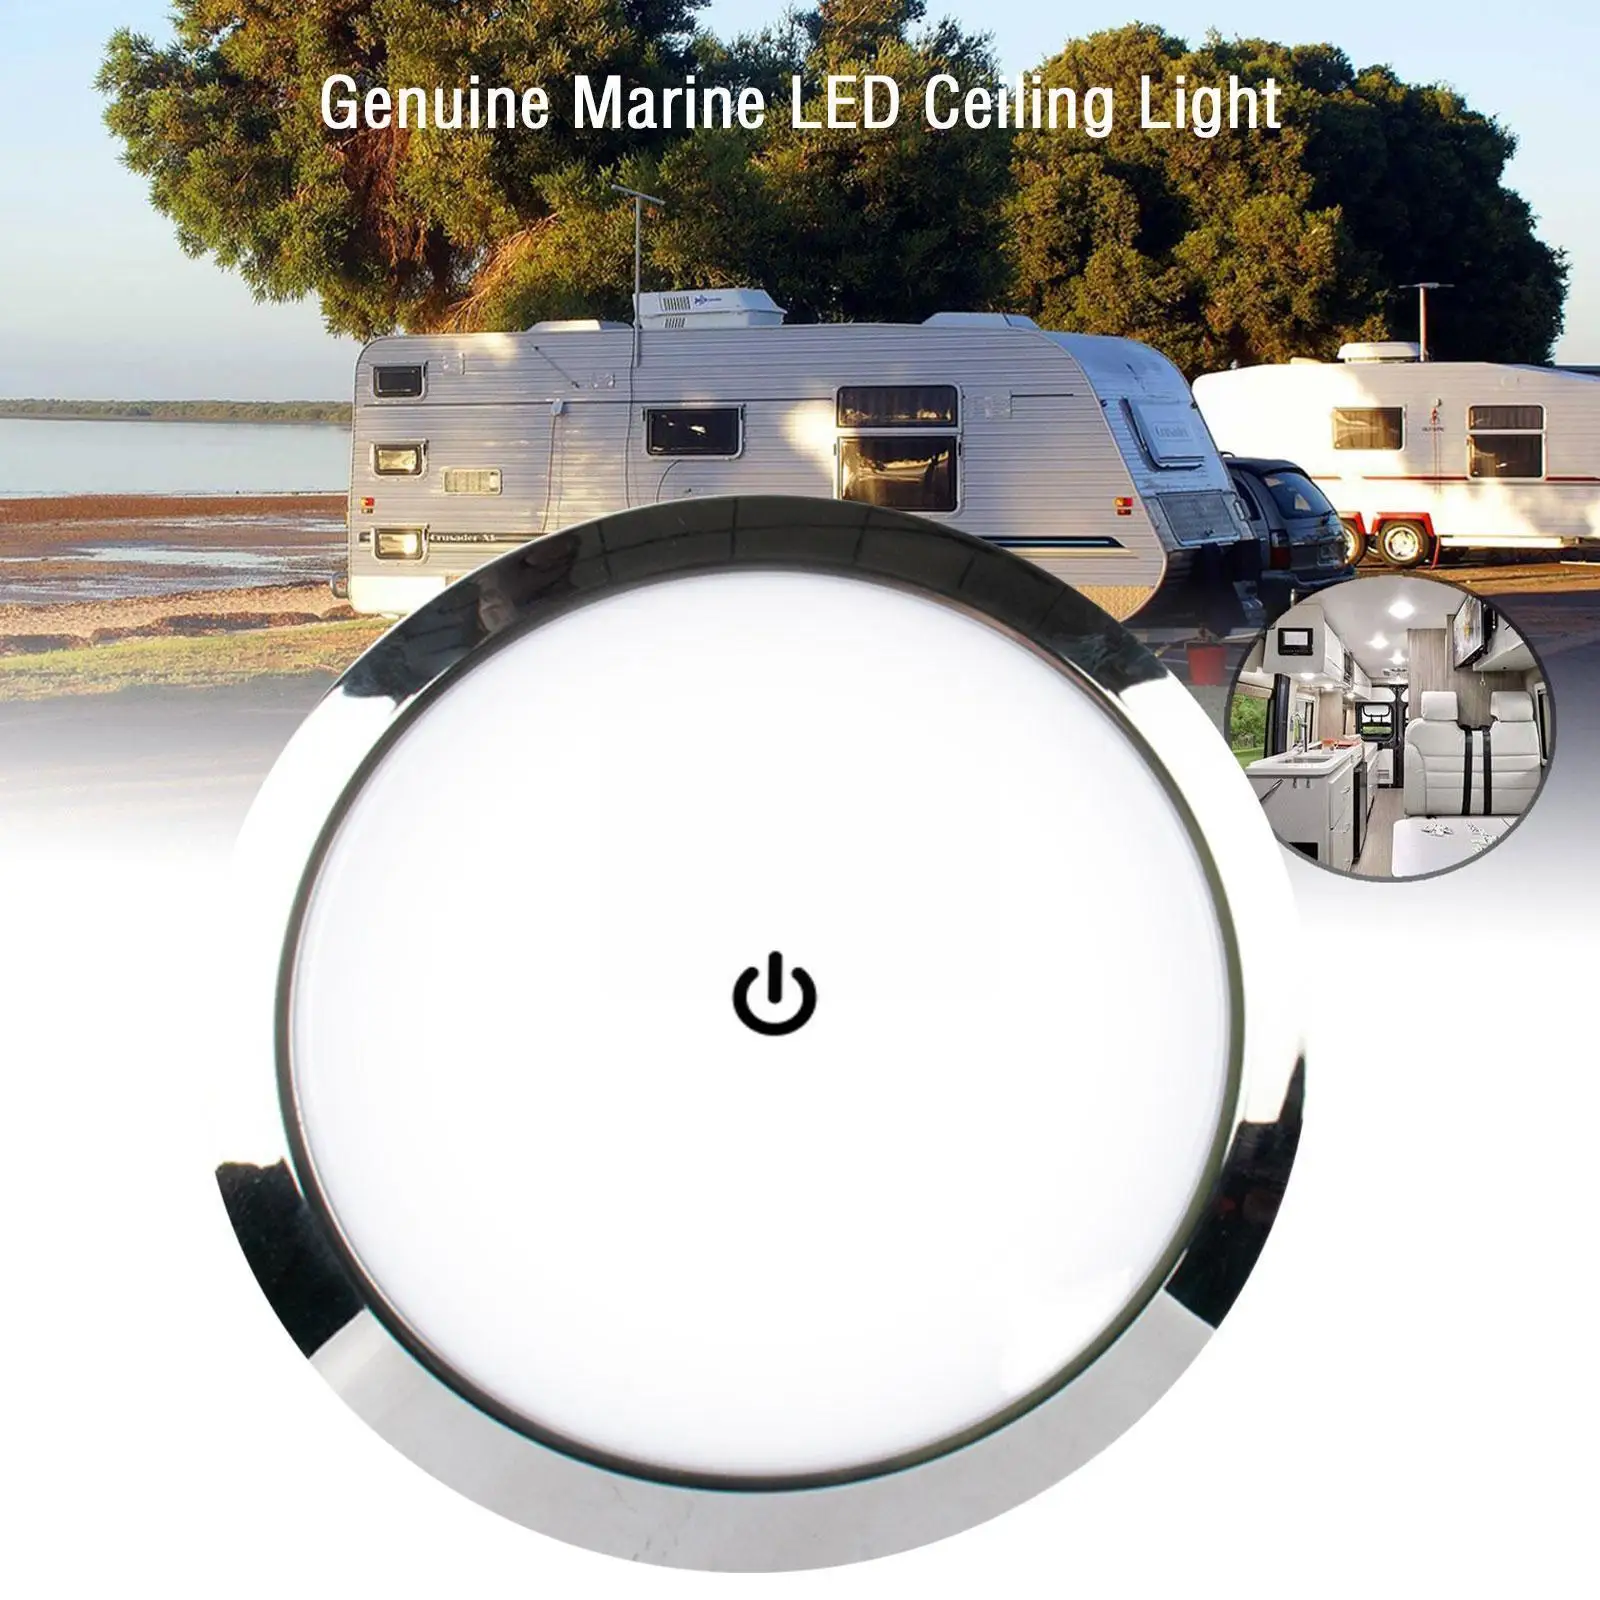 12V 24V RV Caravan LED Ceiling Dome Roof Light Interior Lamp For Motorhome Camper Caravan Accessories Marine Ceiling Roof L D4U7